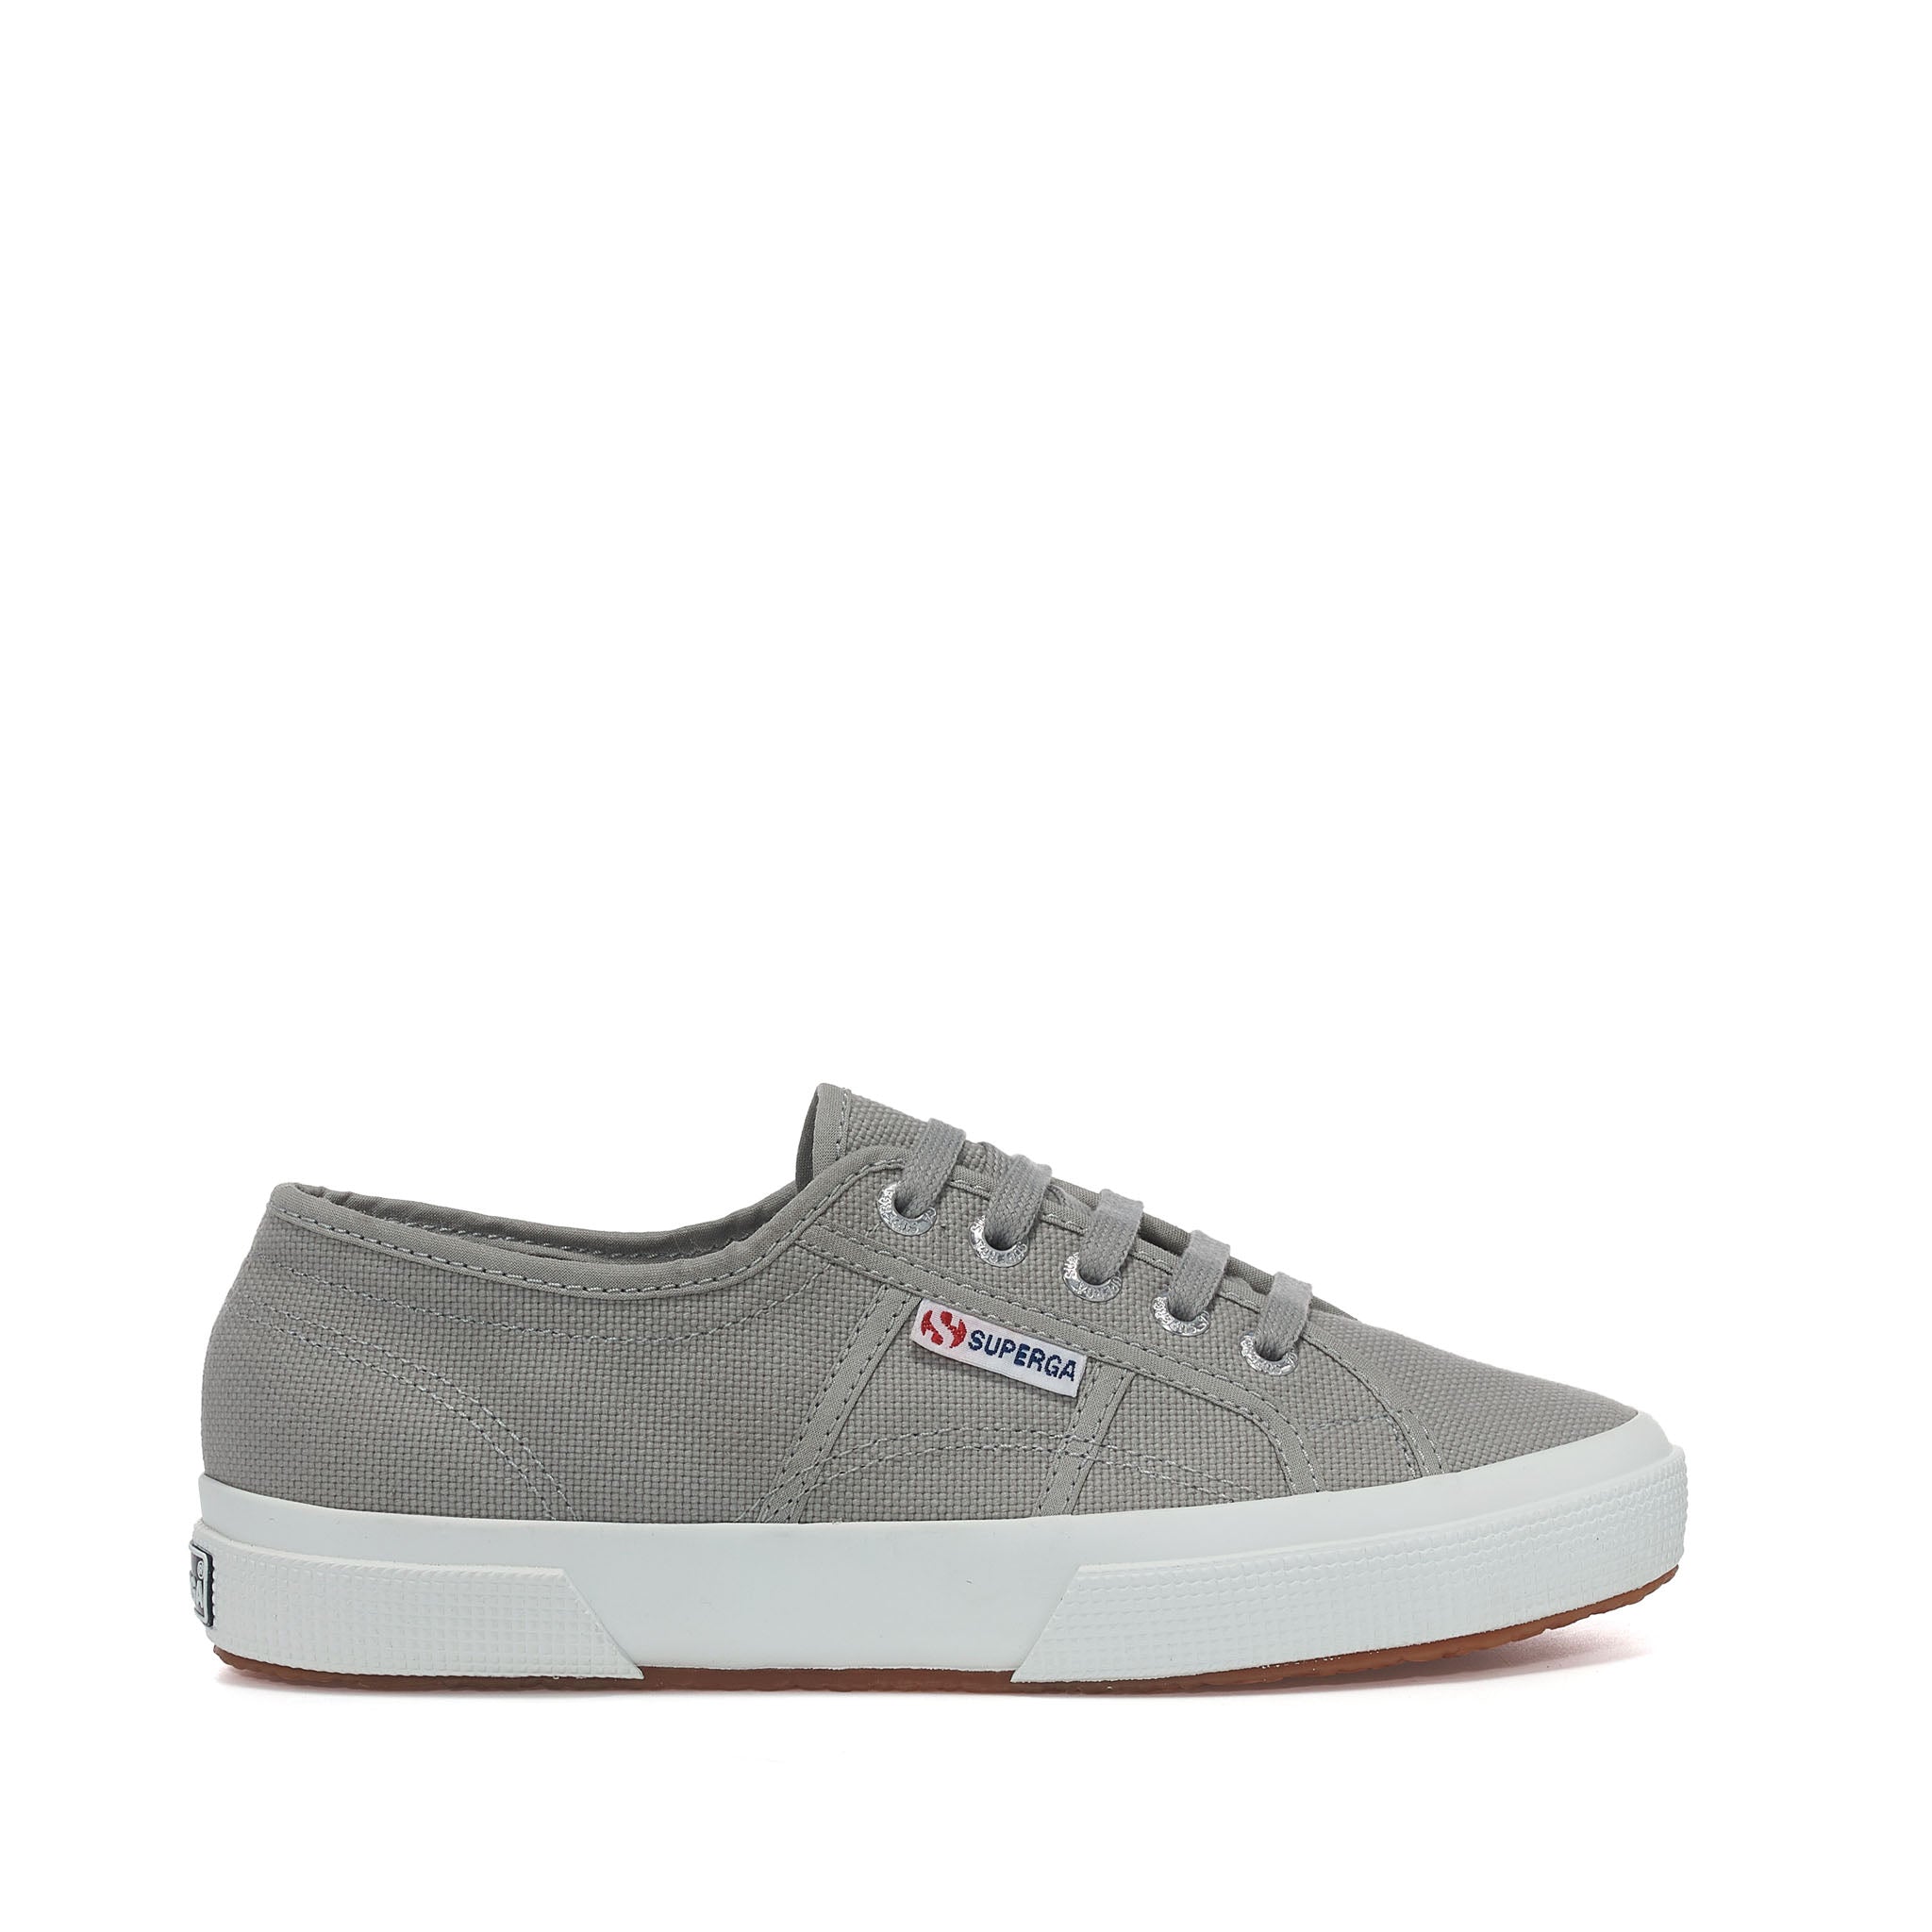 2750 Cotu Classic Sneakers Grey Dark Sage – Superga US